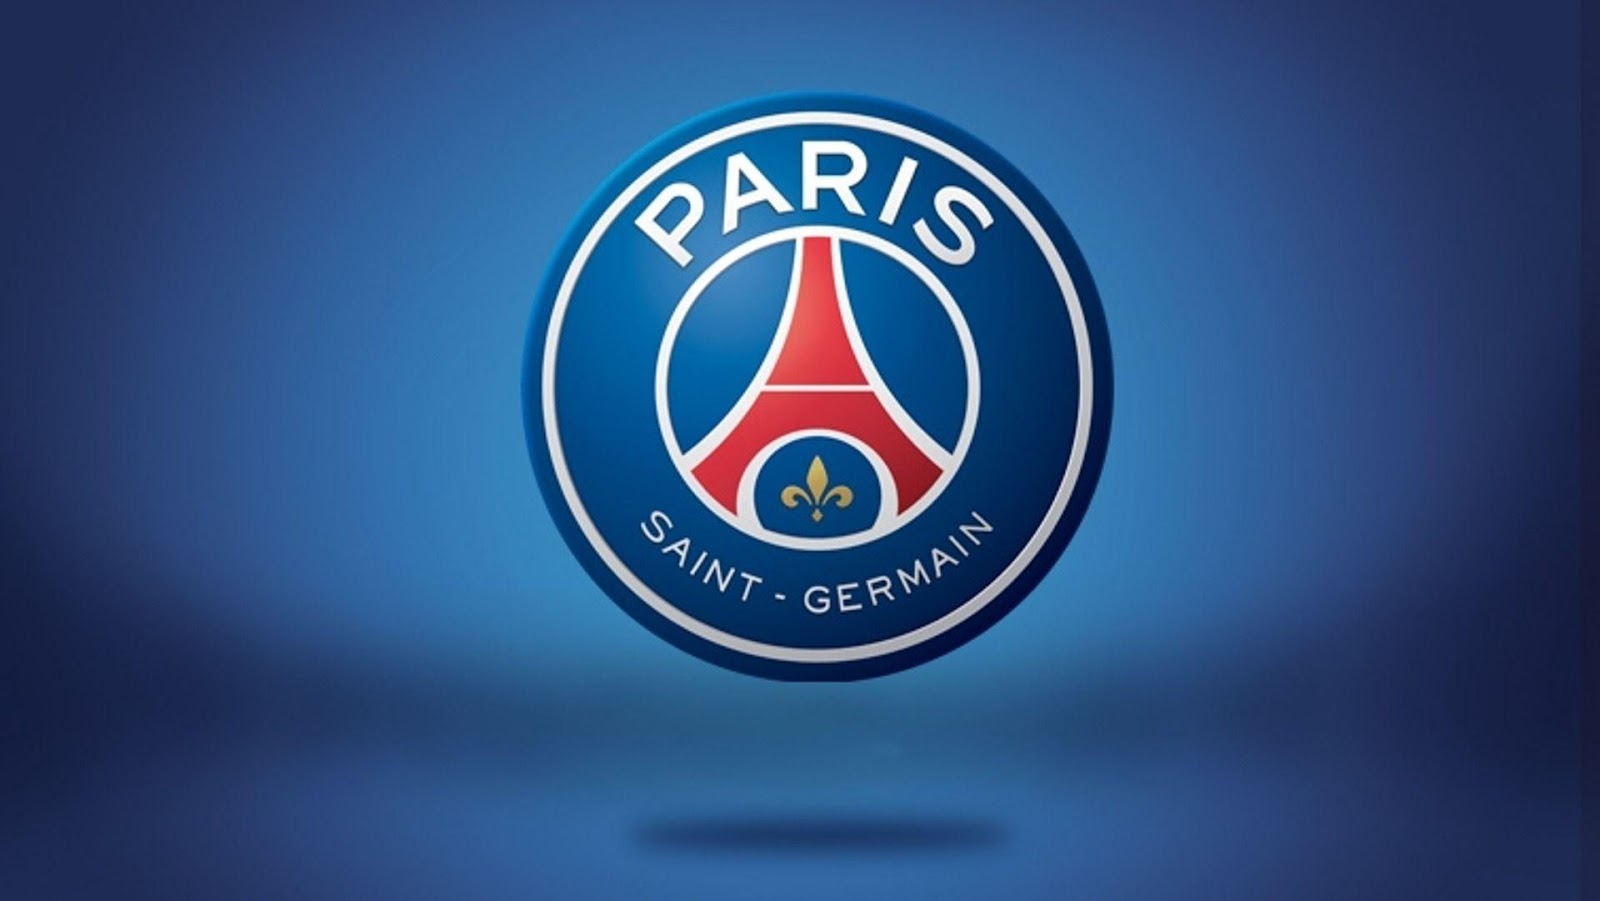 PSG - Câu lạc bộ Germain hùng mạnh của làng túc cầu thế giới, , Hỏi đáp